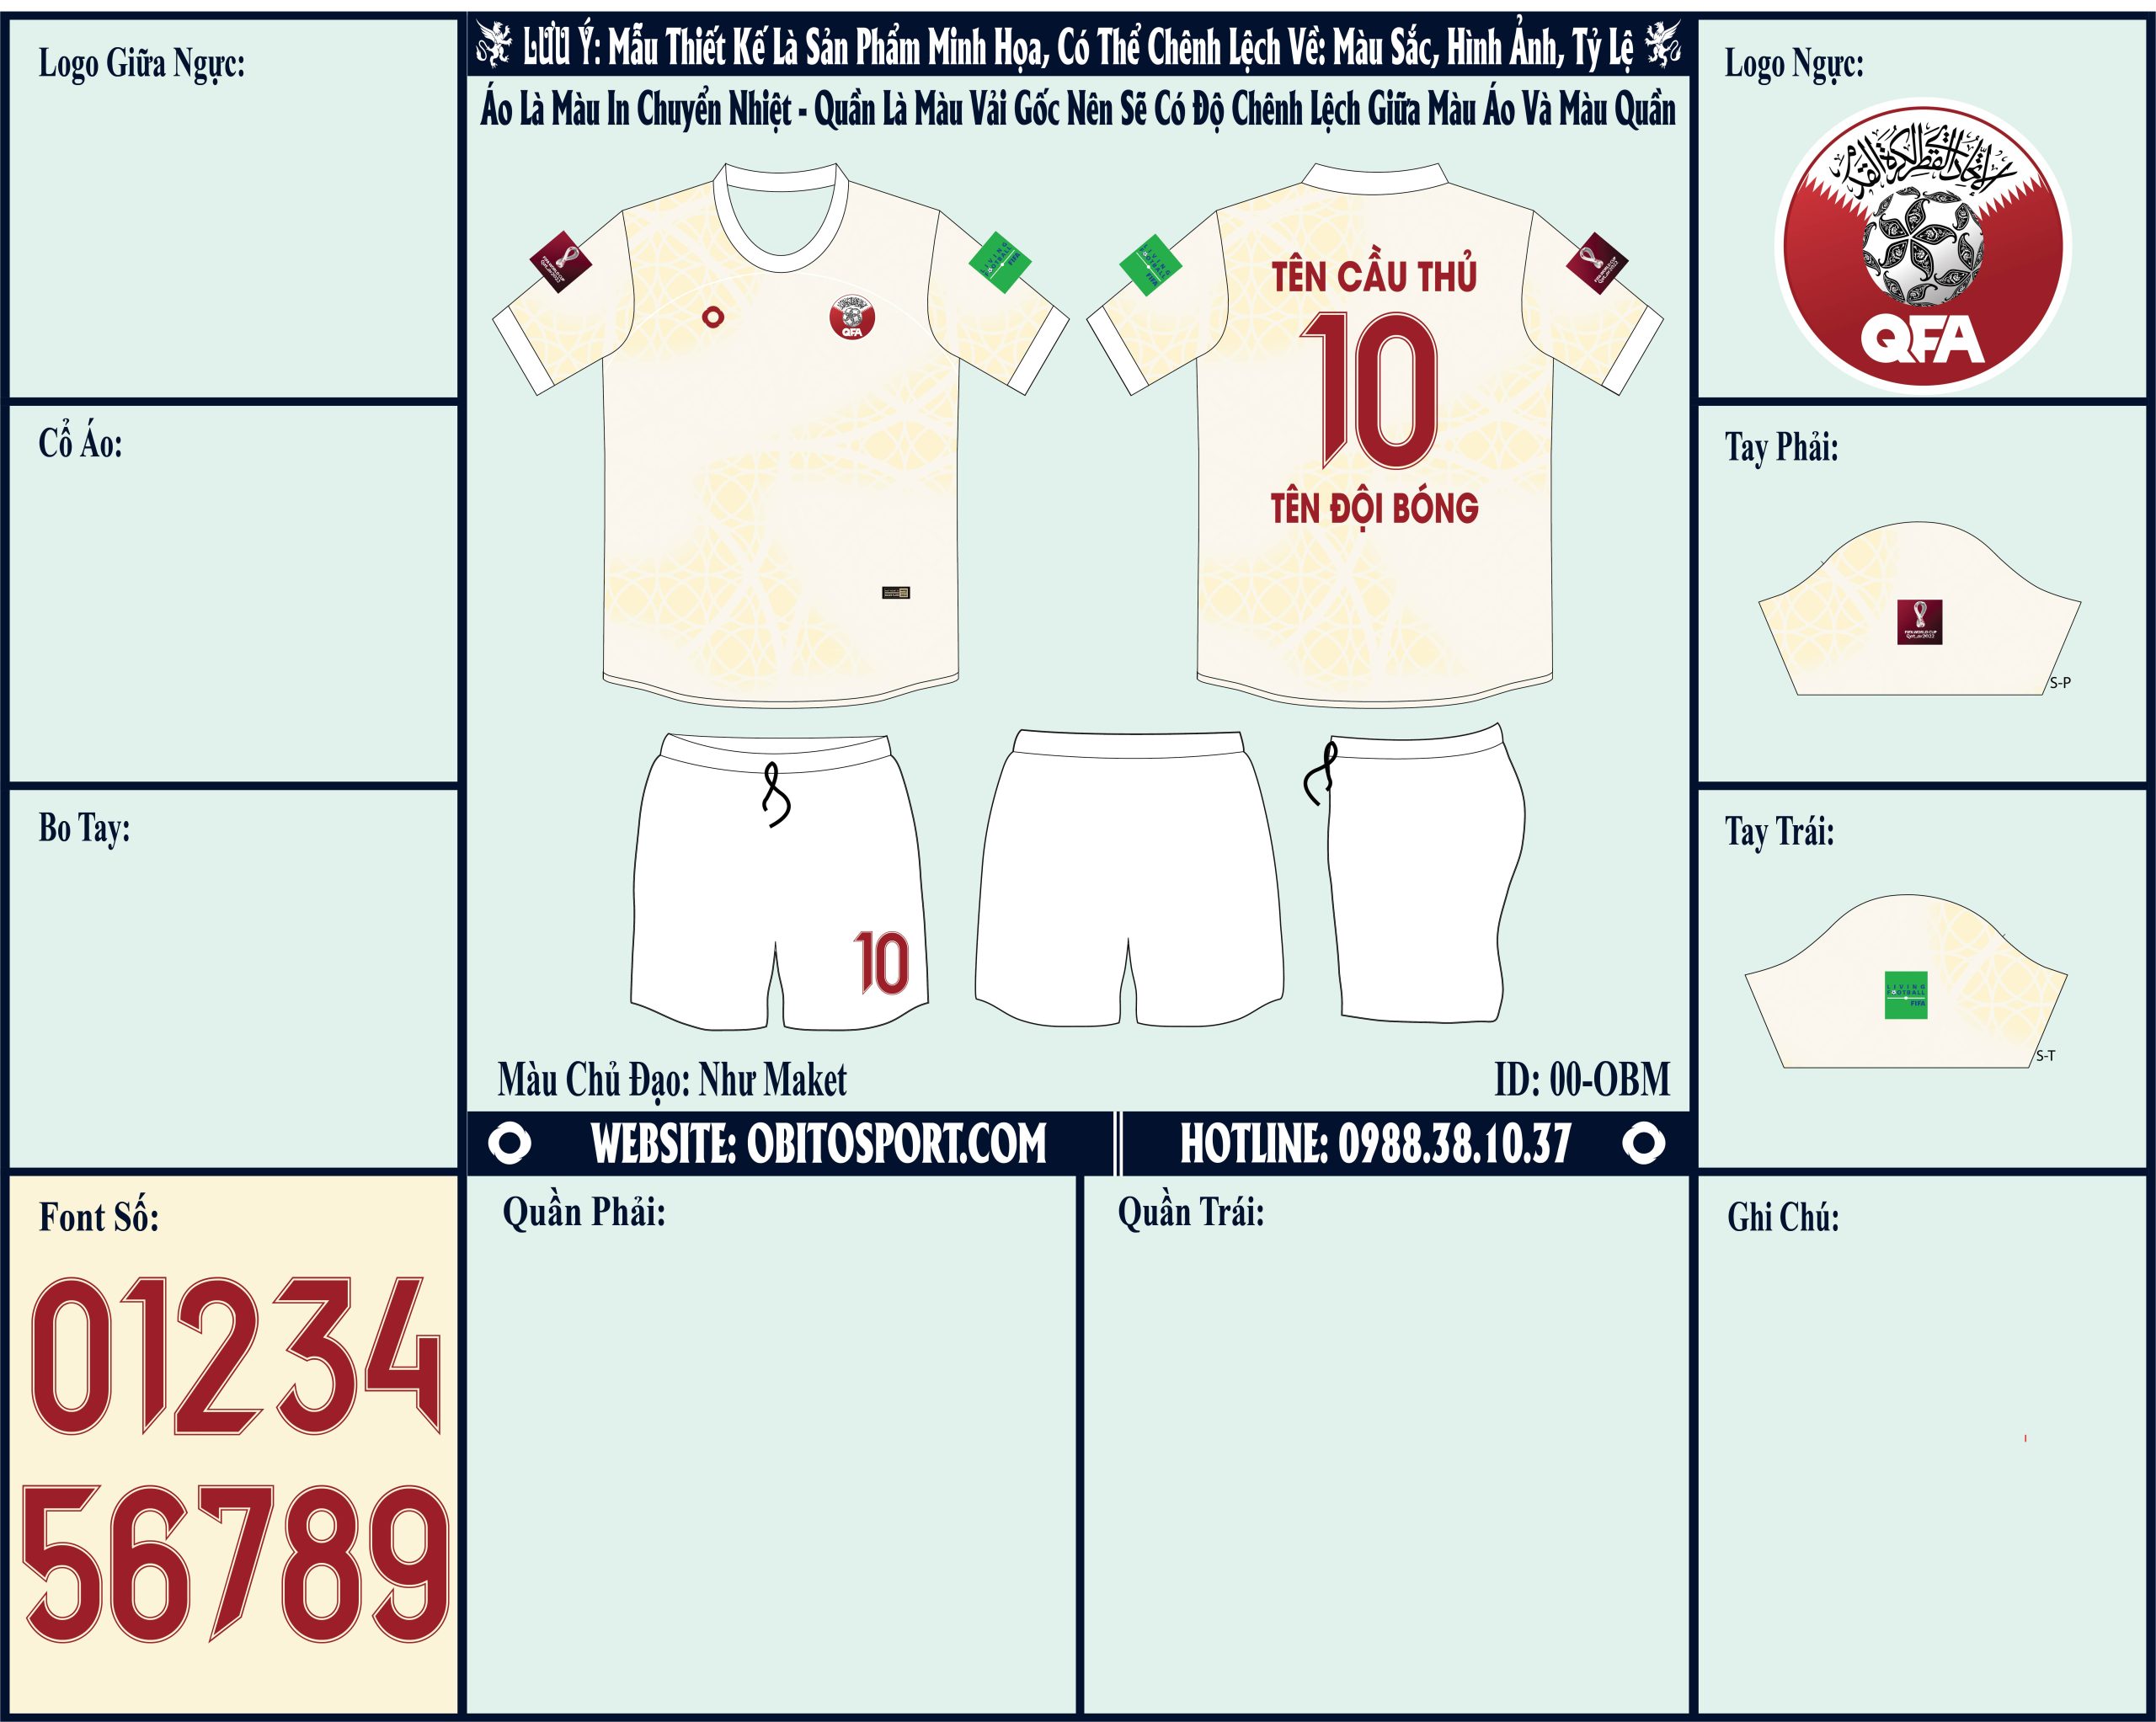 Mẫu ảnh áo đội tuyển Qatar sân khách World Cup 2022 Market - Đây là một trong những thiết kế nằm trong bộ sưu tập áo bóng đá đội tuyển mới nhất của shop Obito Sport được ra mắt trước thềm mùa giải World Cup 2022. Nếu bạn yêu thích đội tuyển này và là tín đồ đam mê màu trắng nổi bật thì sản phẩm này sẽ là sự lựa chọn hoàn hảo nhất dành cho bạn đó. Nhanh tay liên hệ với chúng tôi để sở hữu ngay thôi nào! 